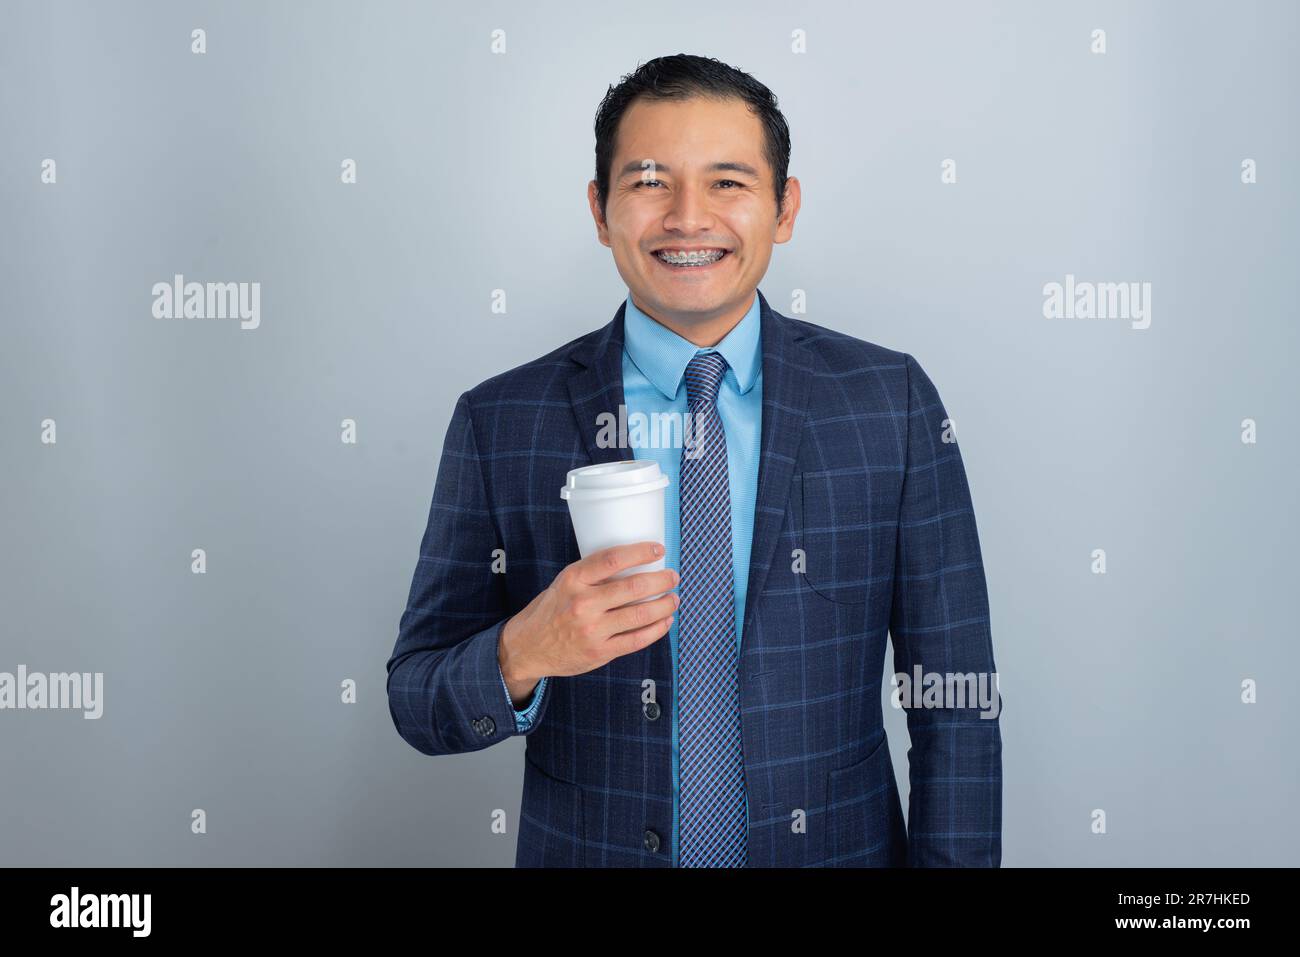 Jeune hispanique en costume bleu et sourit de cravate alors qu'il tient un café prêt pour le travail, une personne Banque D'Images